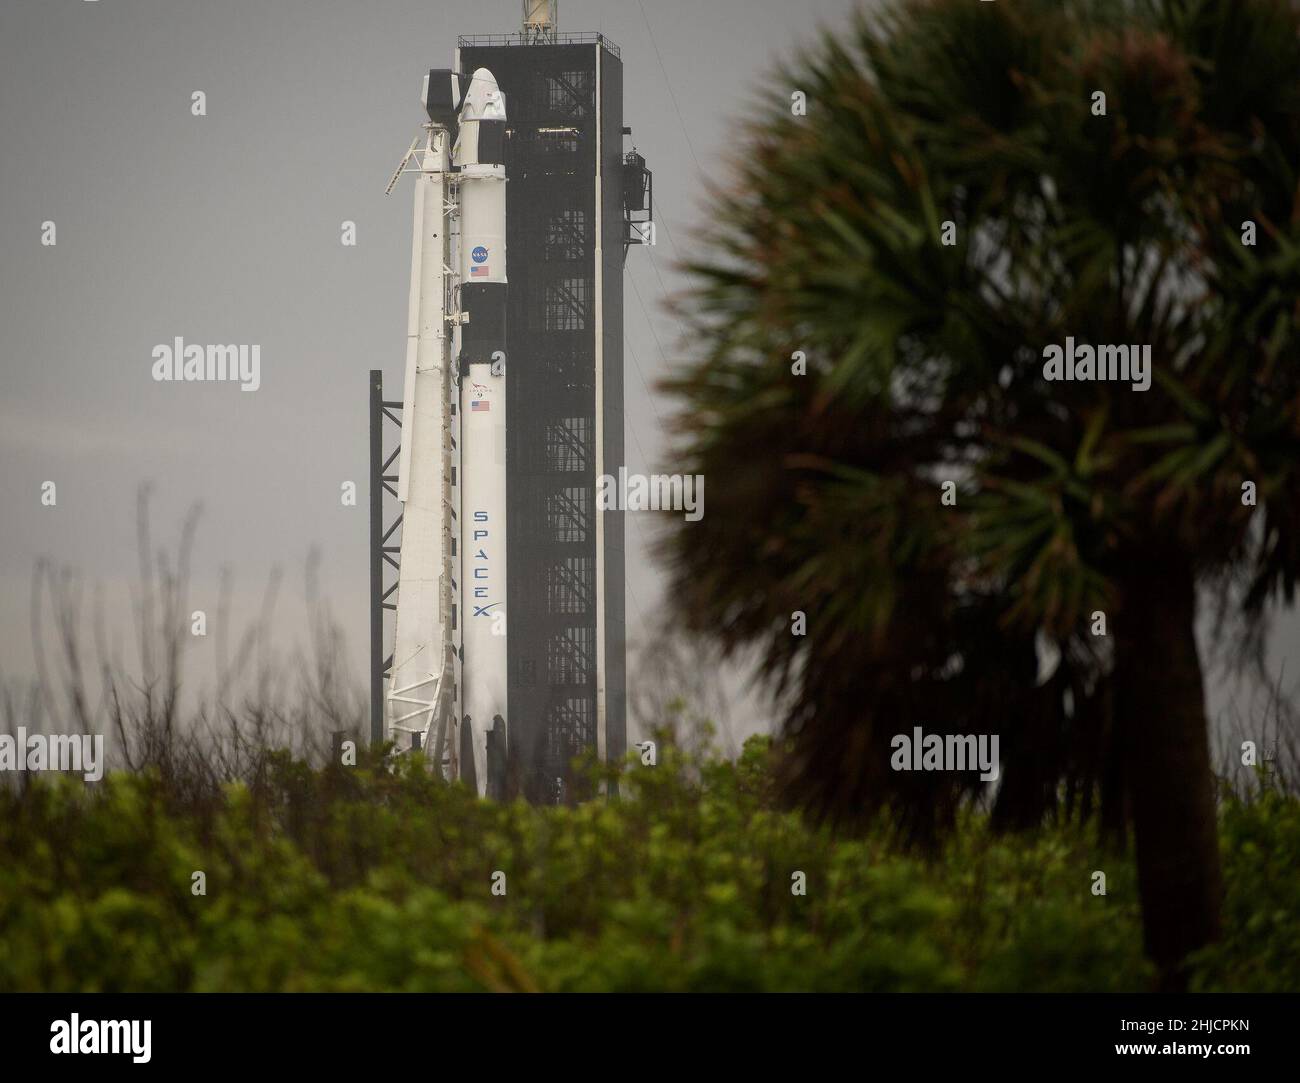 Un razzo SpaceX Falcon 9 con la navicella spaziale Crew Dragon a bordo dell'azienda è visto sul trampolino di lancio al Launch Complex 39A mentre i preparativi per la missione Demo-2, lunedì 25 maggio 2020, presso il centro spaziale NASA‚Äôs Kennedy in Florida. La missione NASA‚Äôs SpaceX Demo-2 è il primo lancio con gli astronauti della navicella spaziale SpaceX Crew Dragon e il razzo Falcon 9 alla Stazione spaziale Internazionale come parte dell'agenzia‚Äôs Commercial Crew Program. Il lancio di Robert Behnken e Douglas Hurley è previsto per mercoledì 27 maggio. Foto Stock